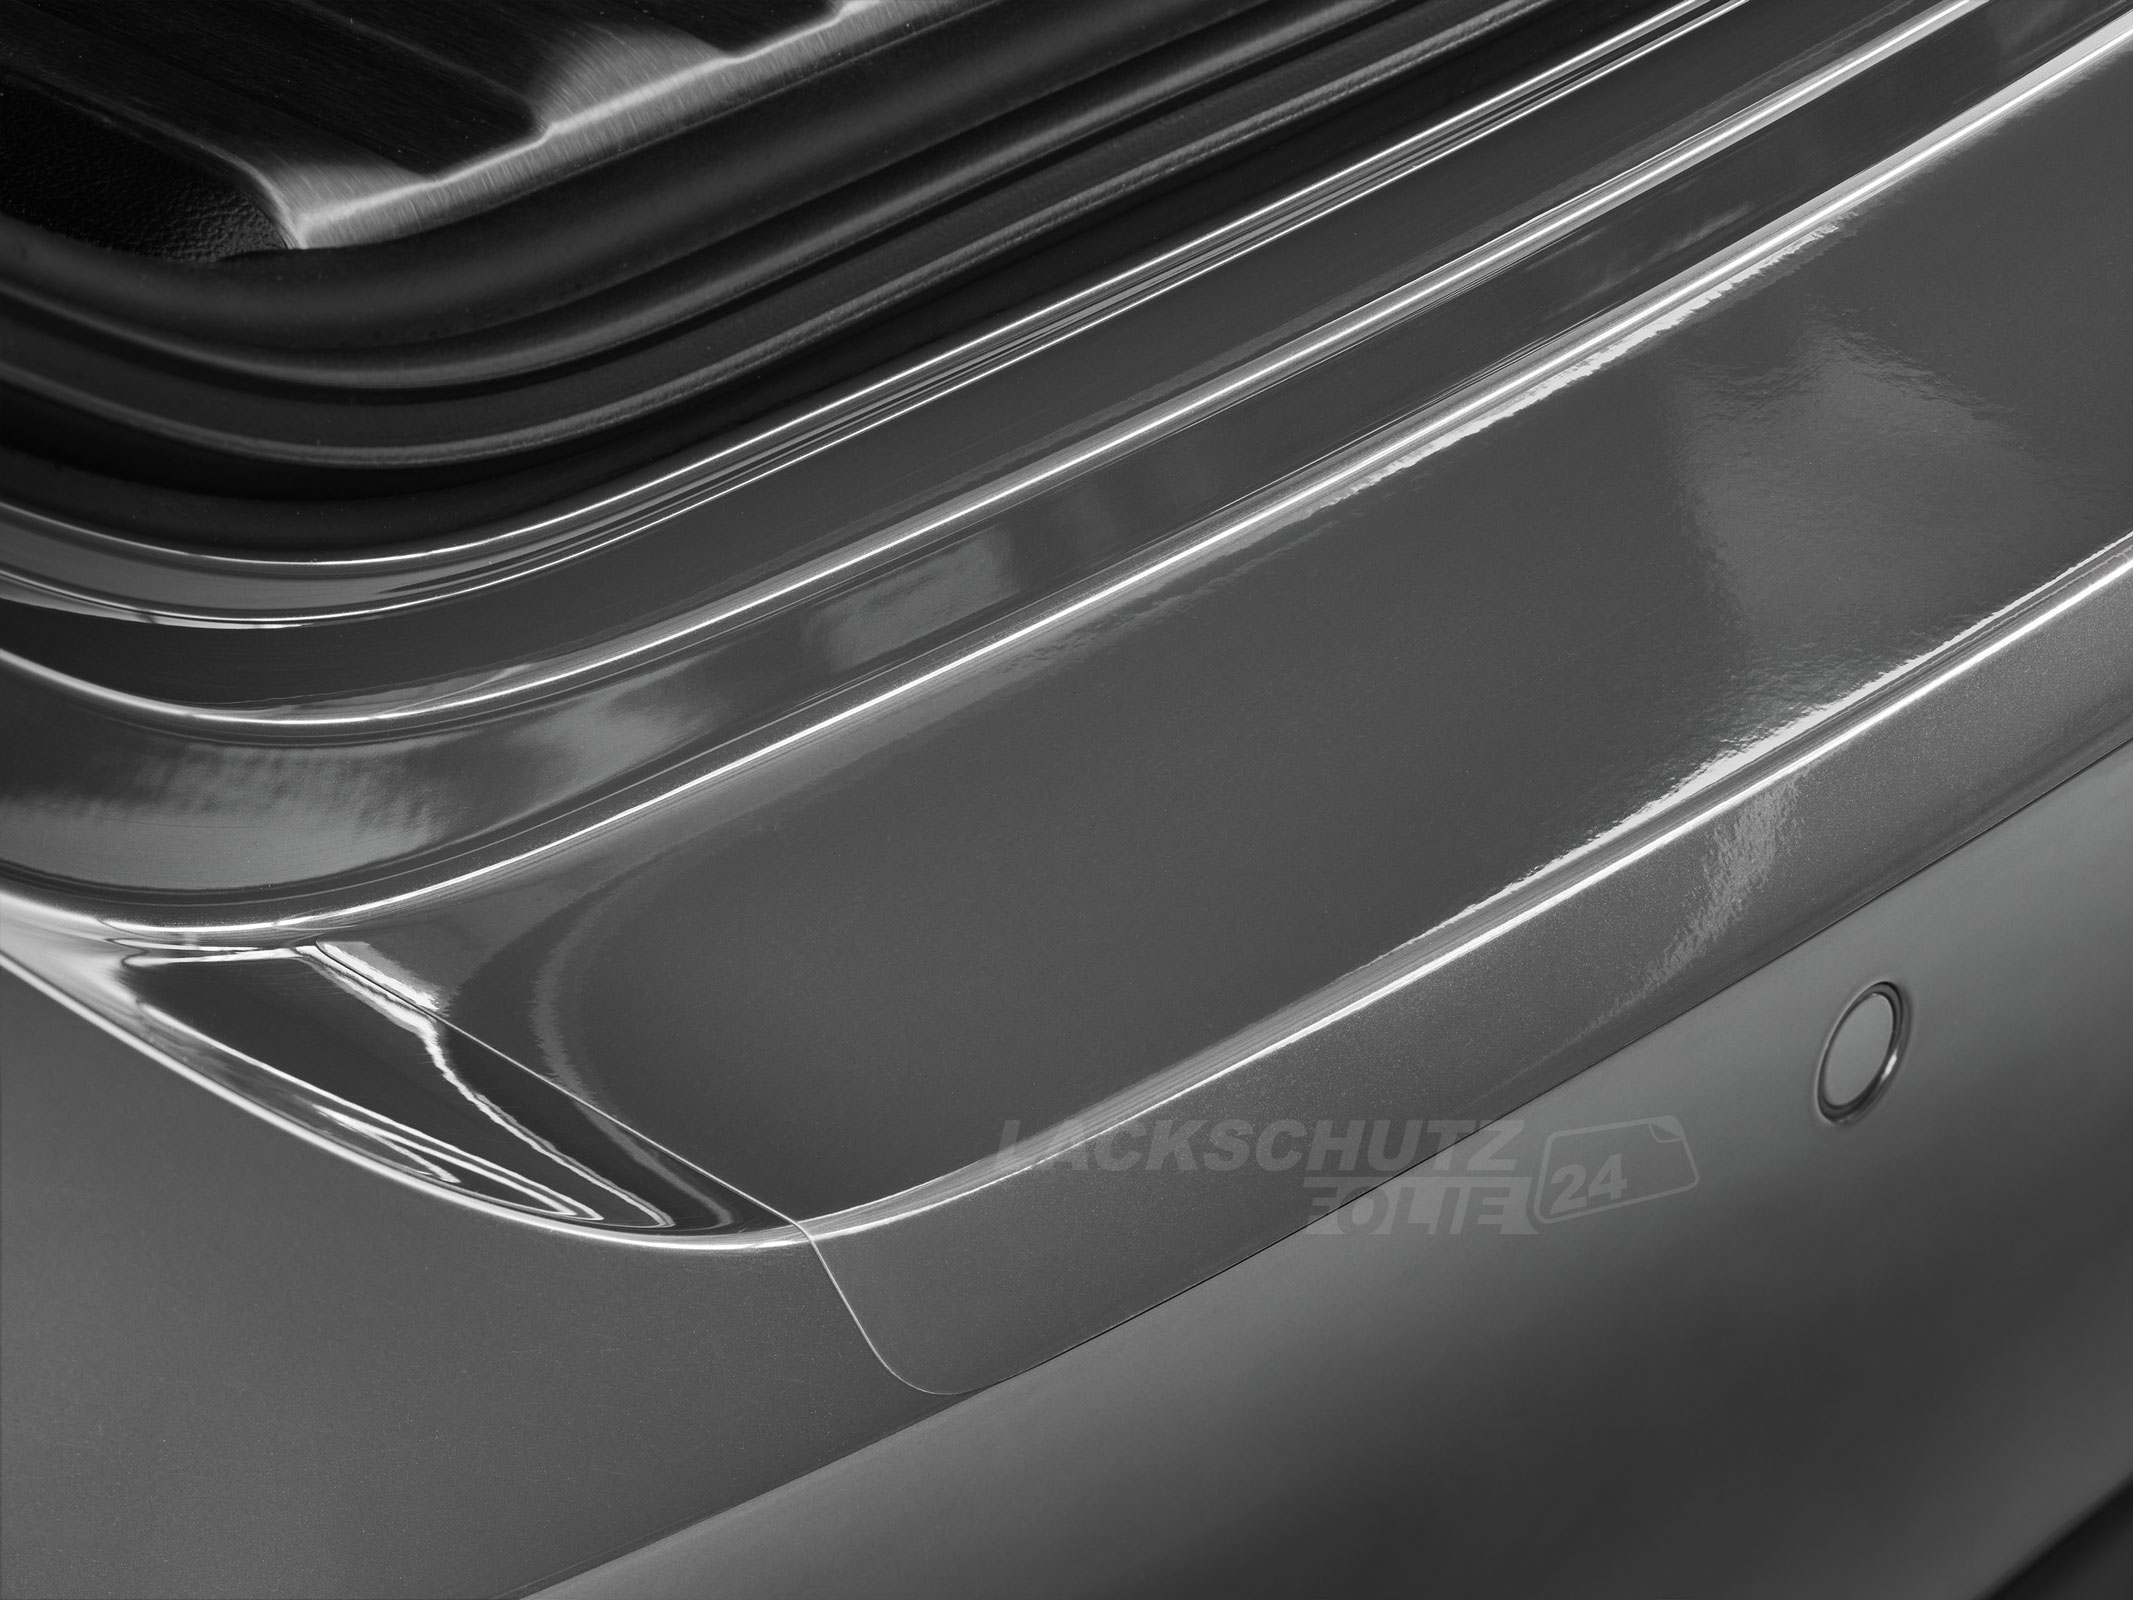 Ladekantenschutzfolie - Transparent Glatt Hochglänzend 240 µm stark für Peugeot 308 (II) Facelift, BJ 09/2017-2021